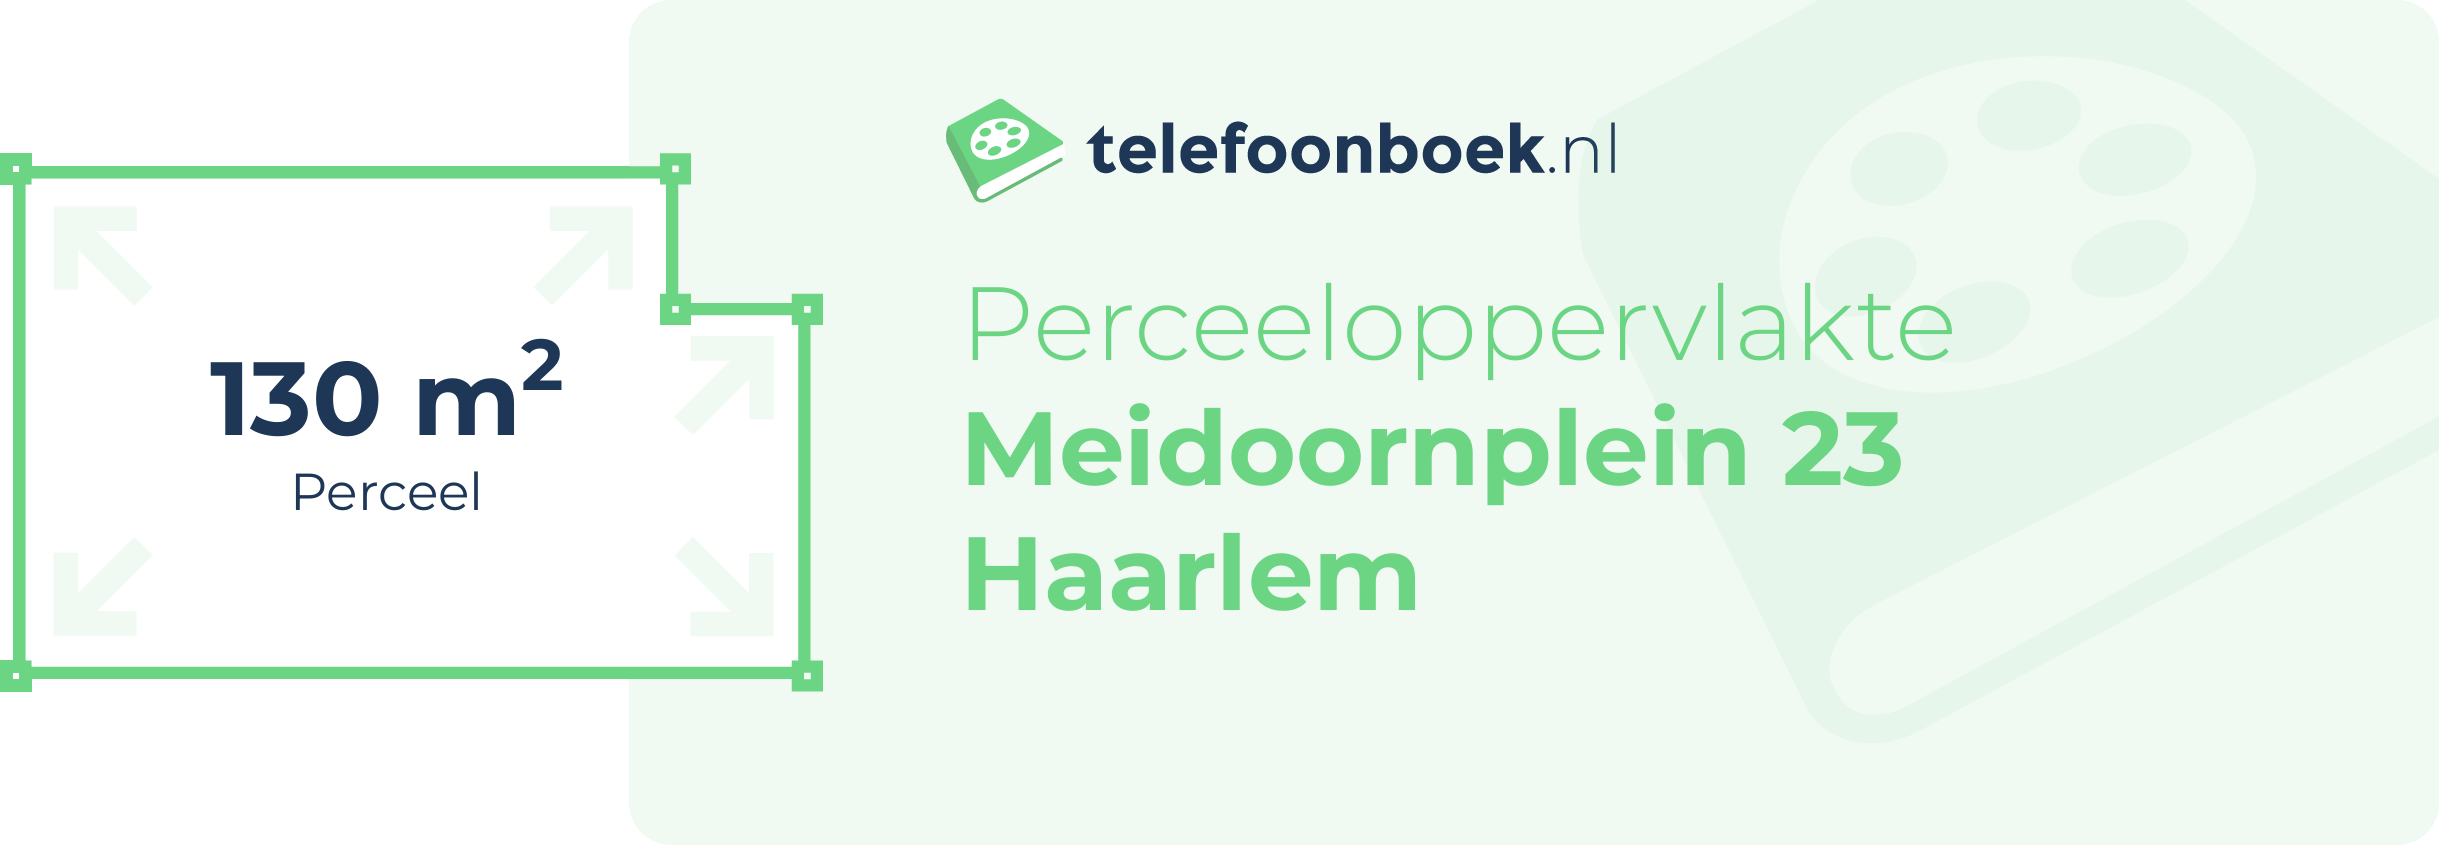 Perceeloppervlakte Meidoornplein 23 Haarlem